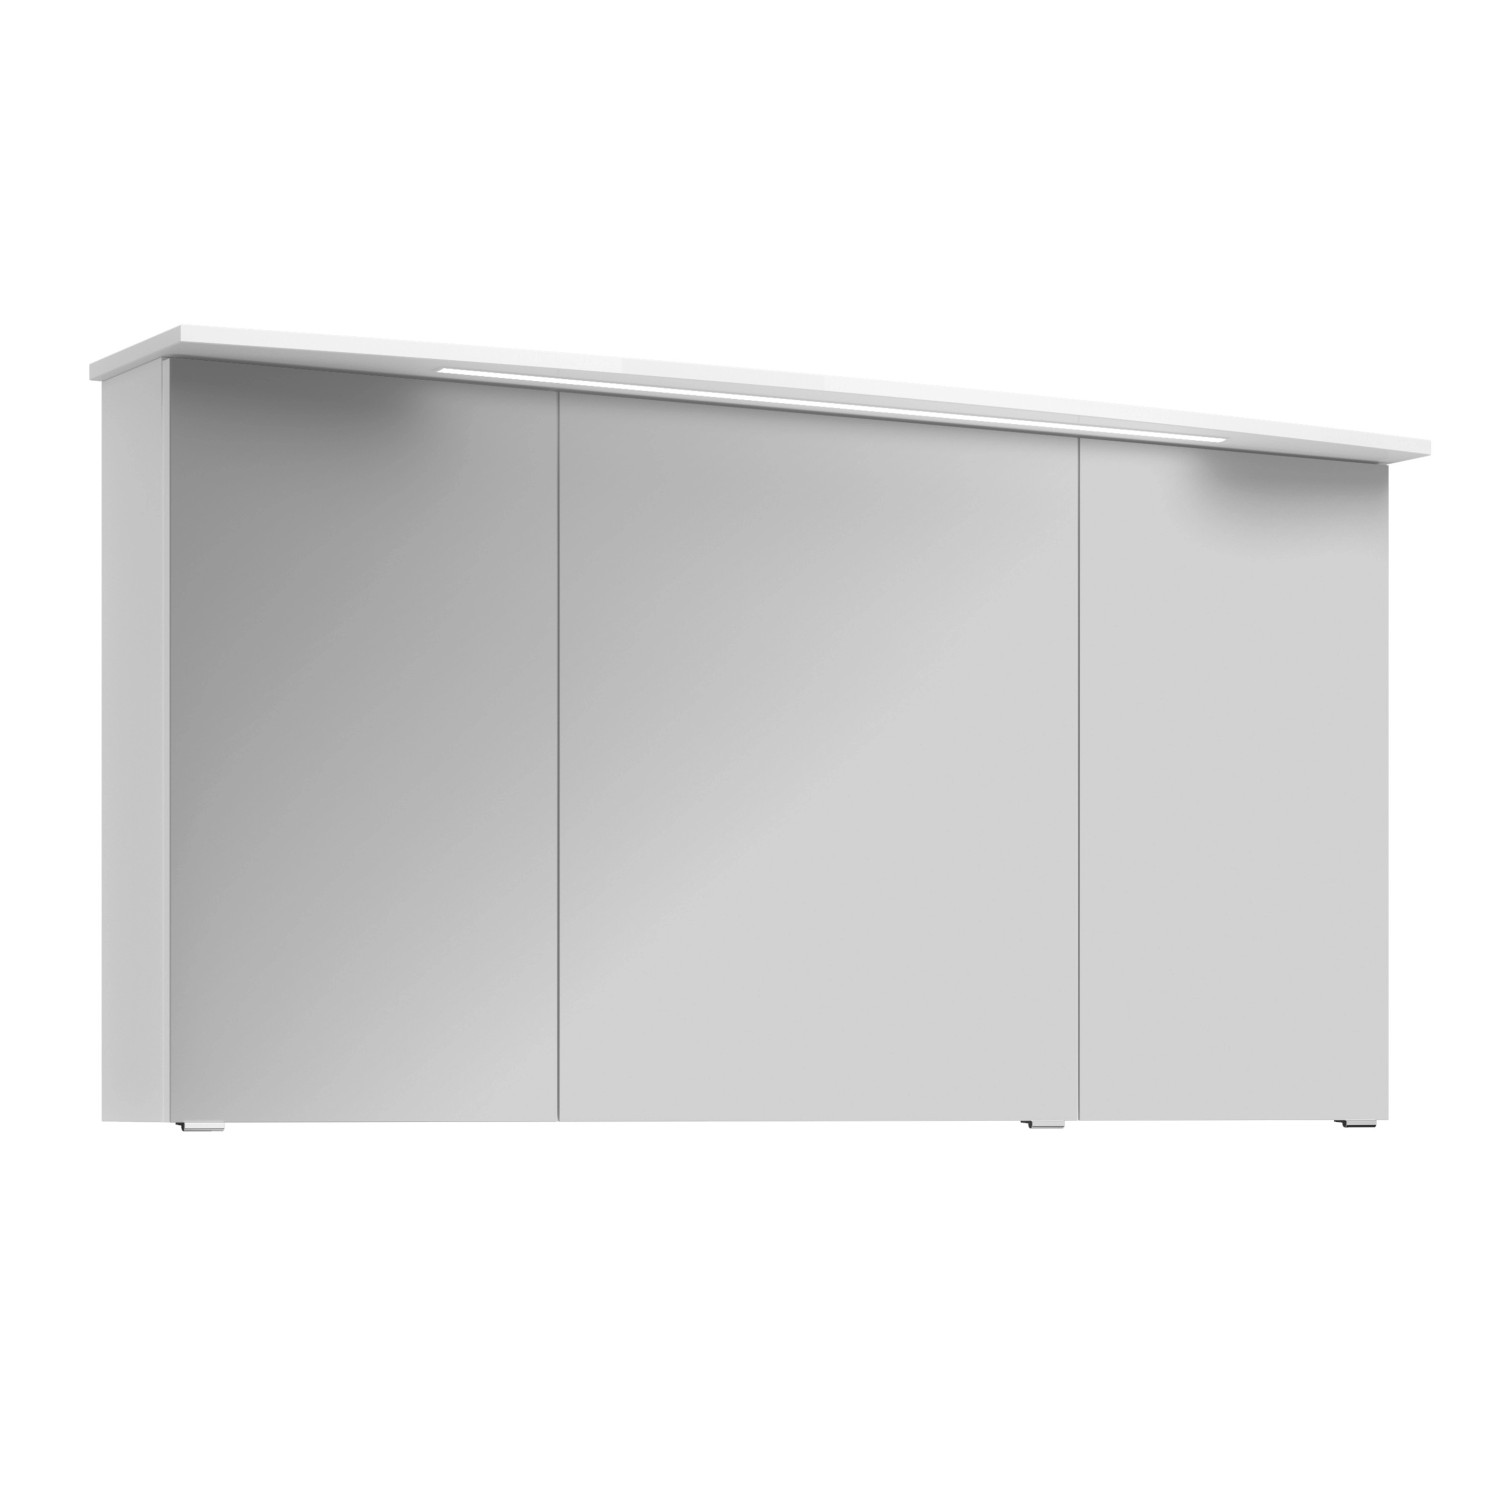 Pelipal Spiegelschrank Serie 4010 Weiß Glänzend 142 cm mit Softclose Türen